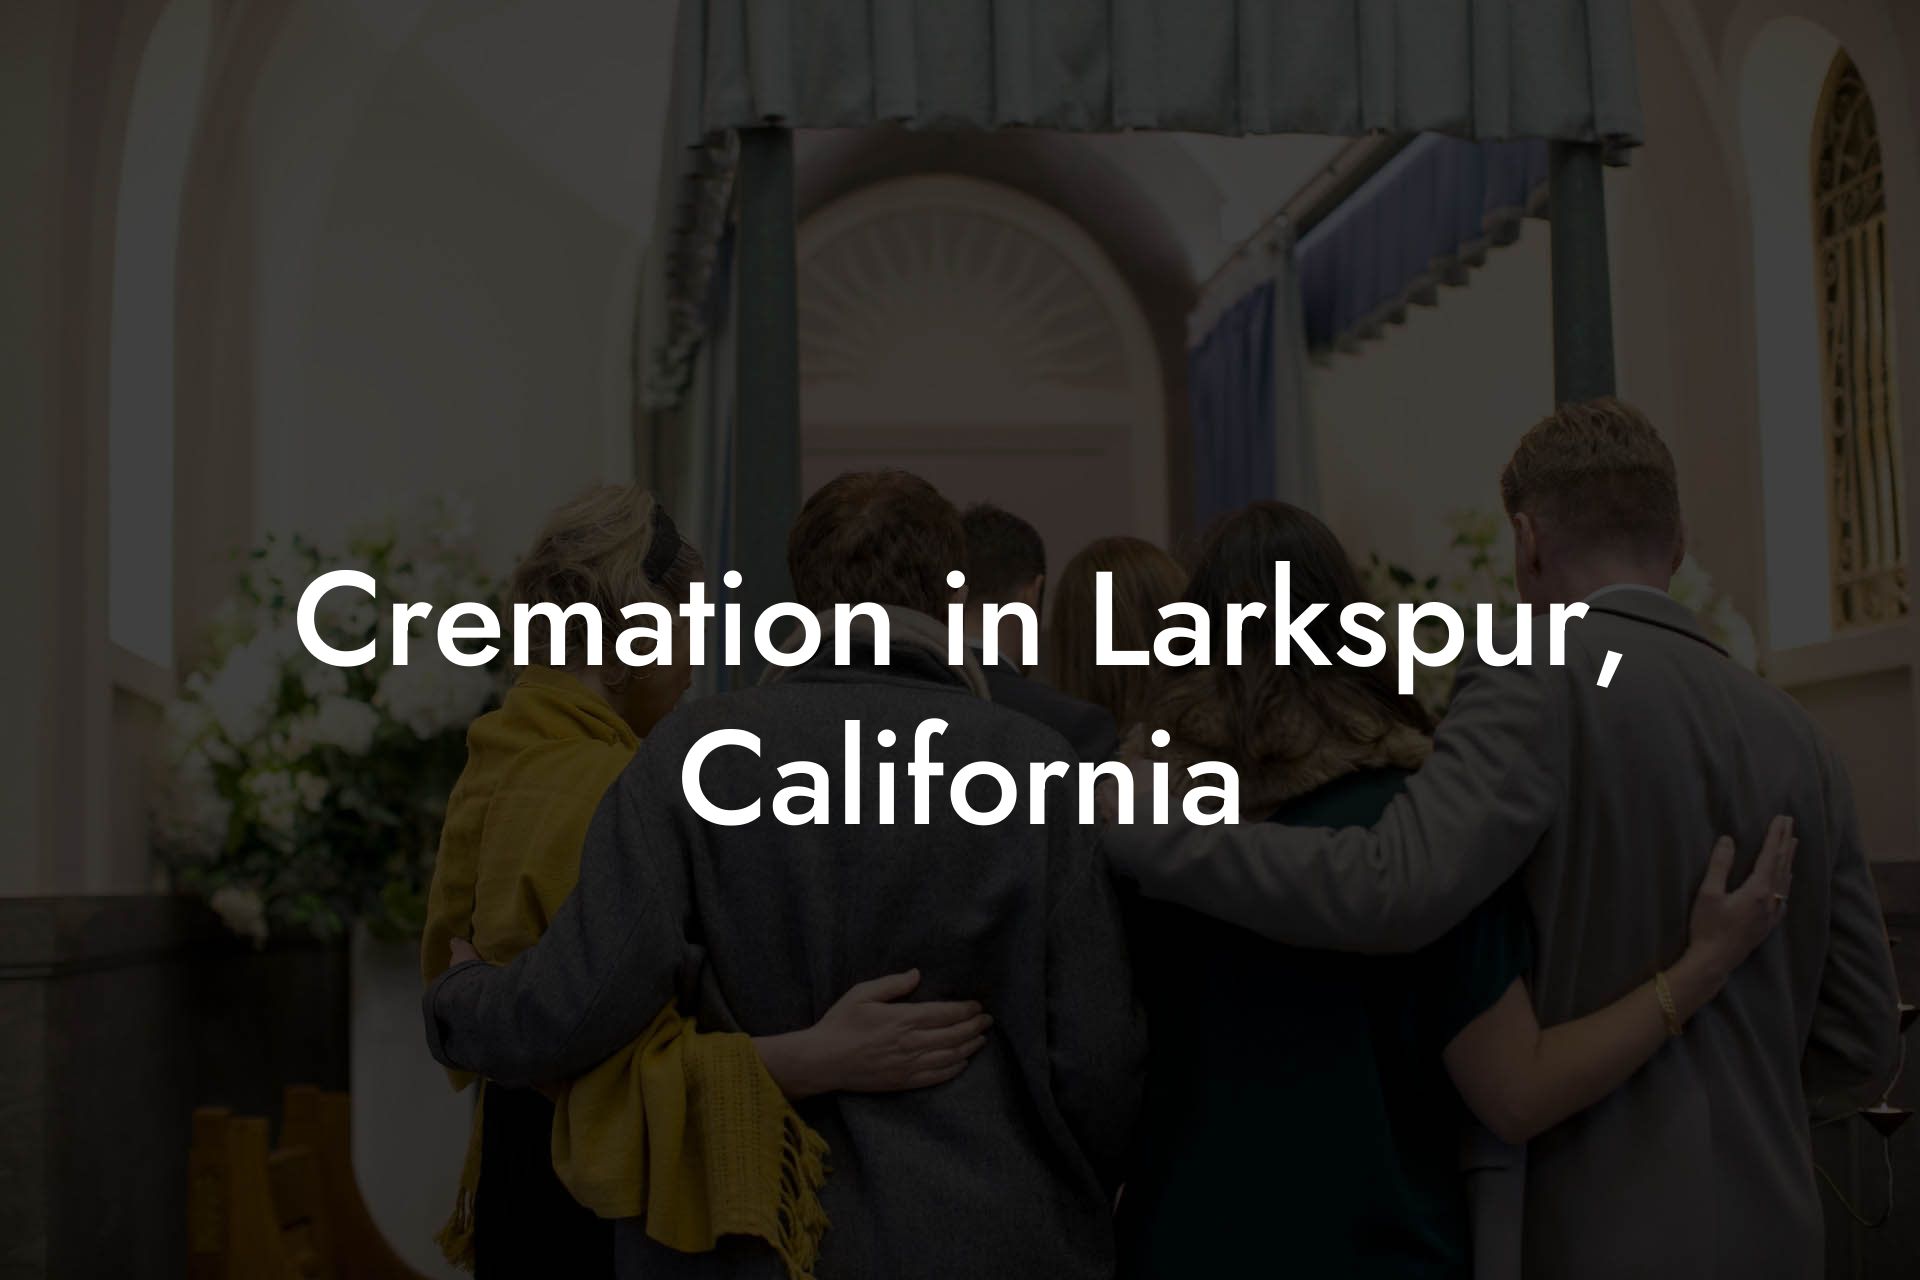 Cremation in Larkspur, California